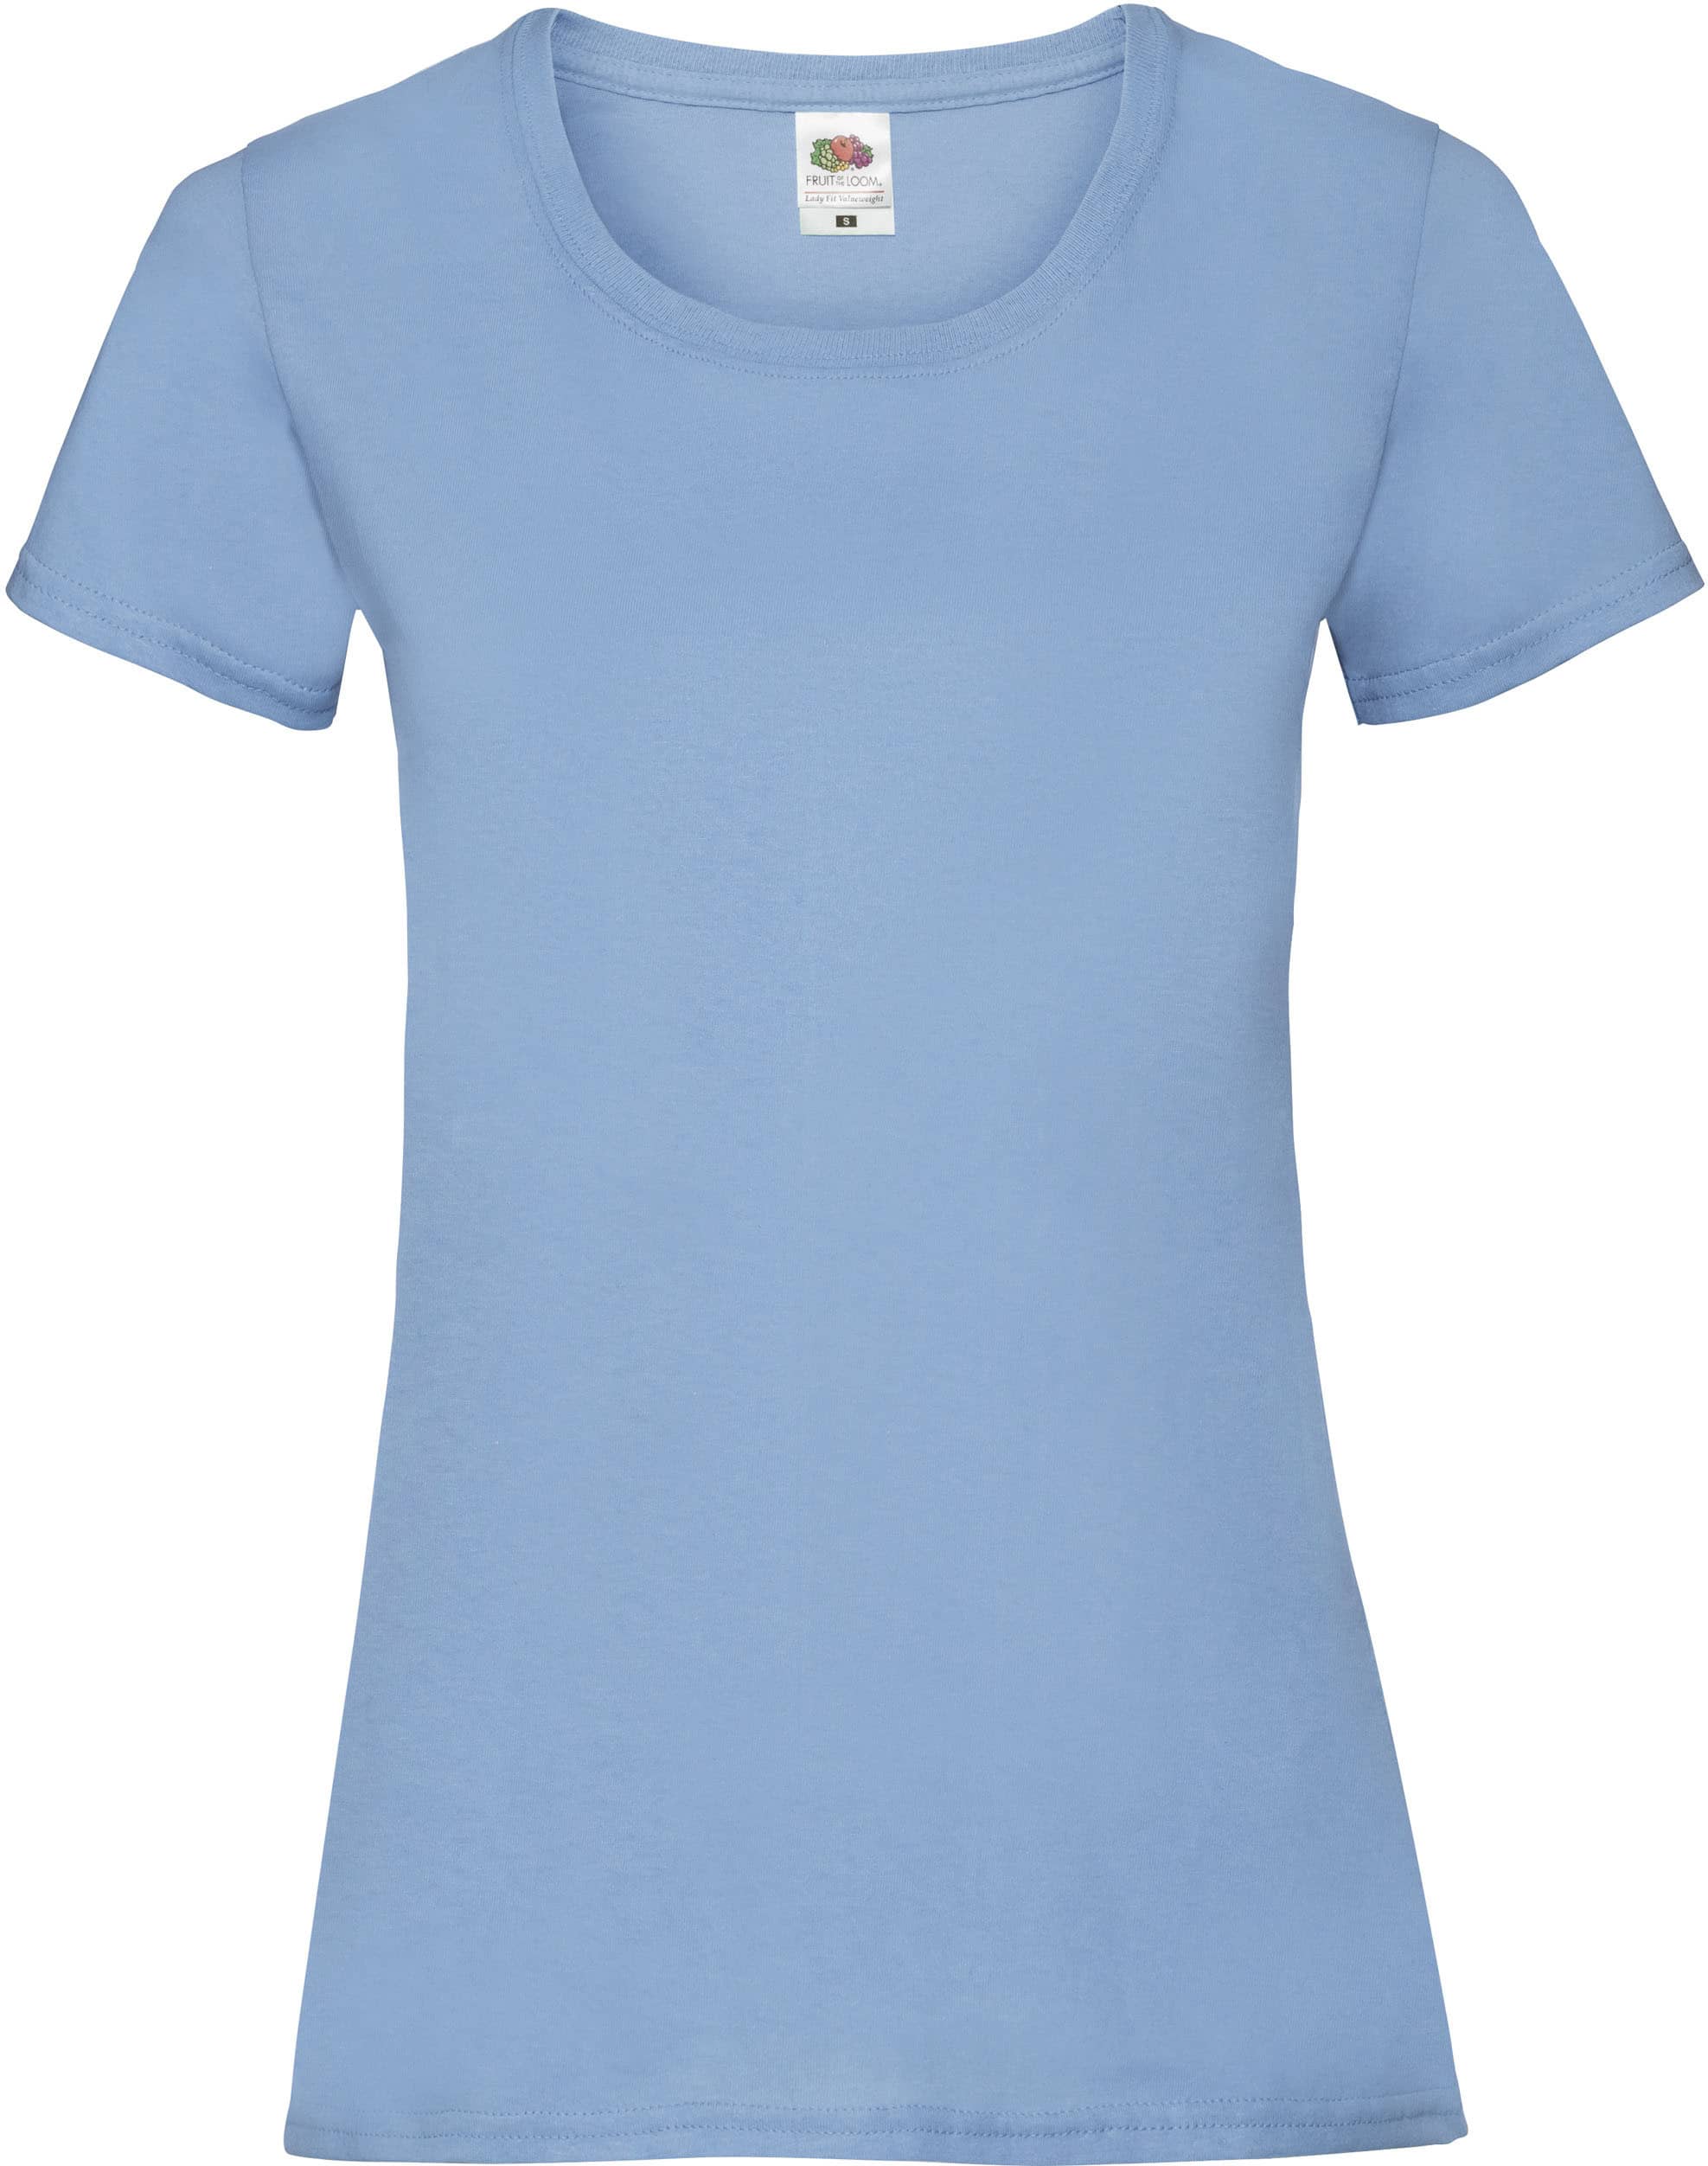 camiseta_personalizada_sc61372_azul_celeste (1)